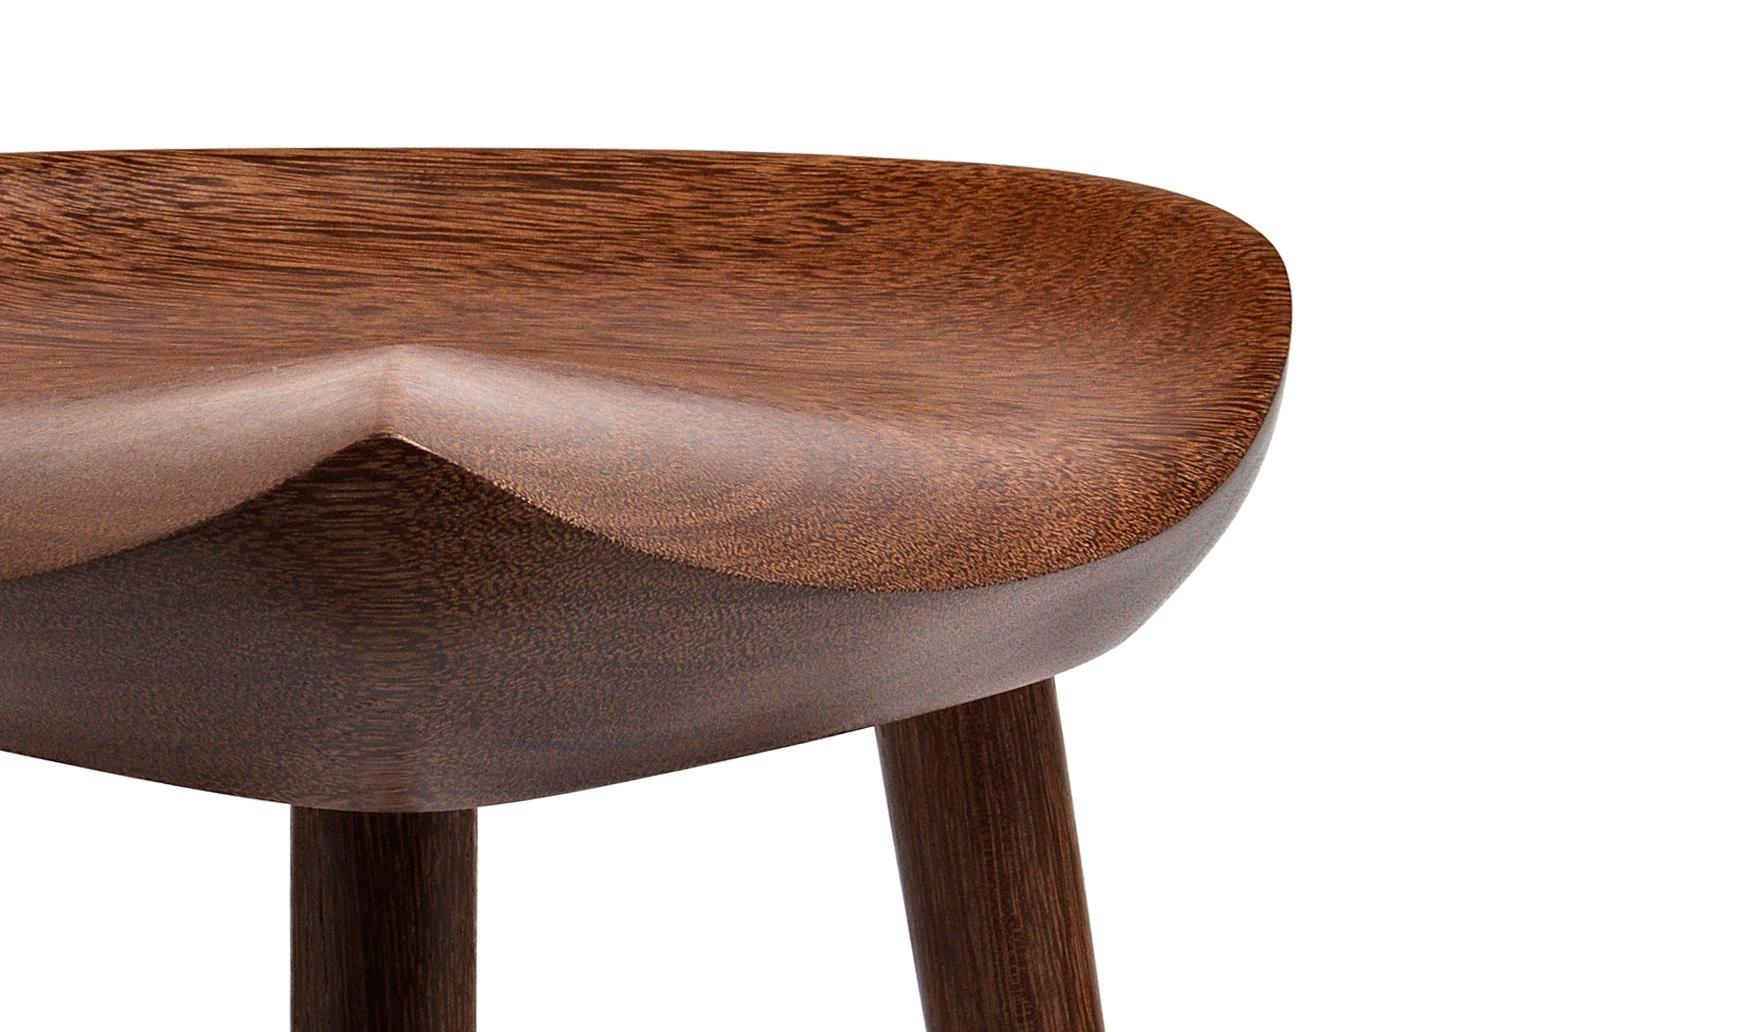 Zeitgenössischer Hocker aus brasilianischem Hartholz, handgeschnitzt vom Künstler Ricardo Graham Ferreira. Diese einzigartigen Möbelstücke sind aus exquisiten tropischen Holzarten gefertigt.

Dieser einzigartige Sattelhocker hat ein perfektes